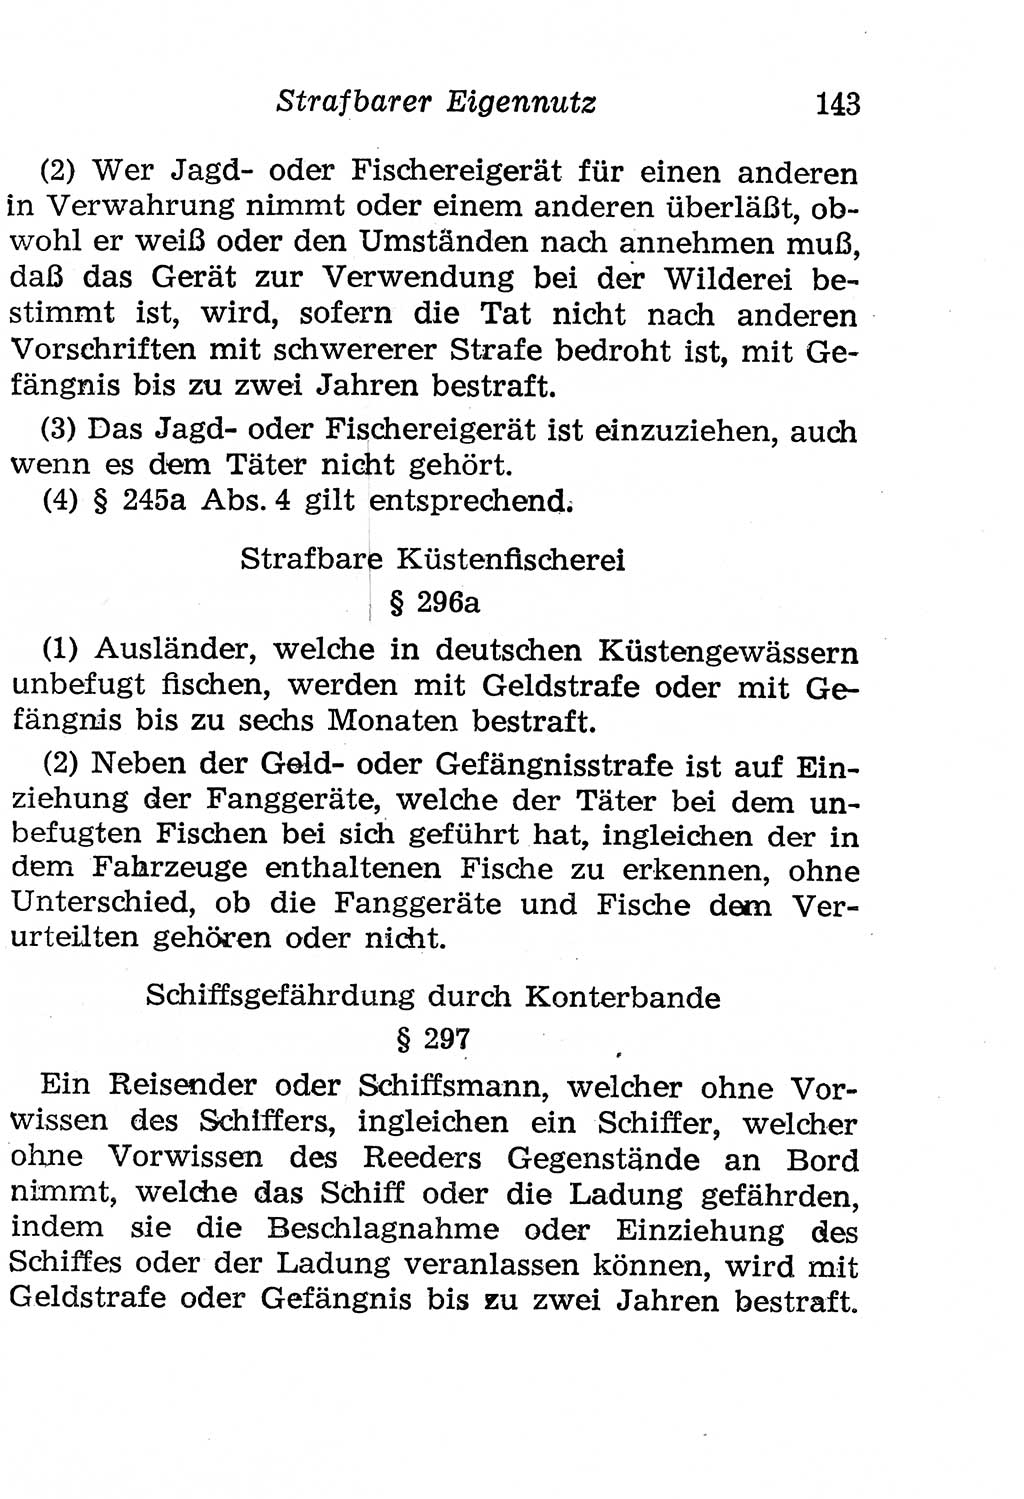 Strafgesetzbuch (StGB) und andere Strafgesetze [Deutsche Demokratische Republik (DDR)] 1958, Seite 143 (StGB Strafges. DDR 1958, S. 143)